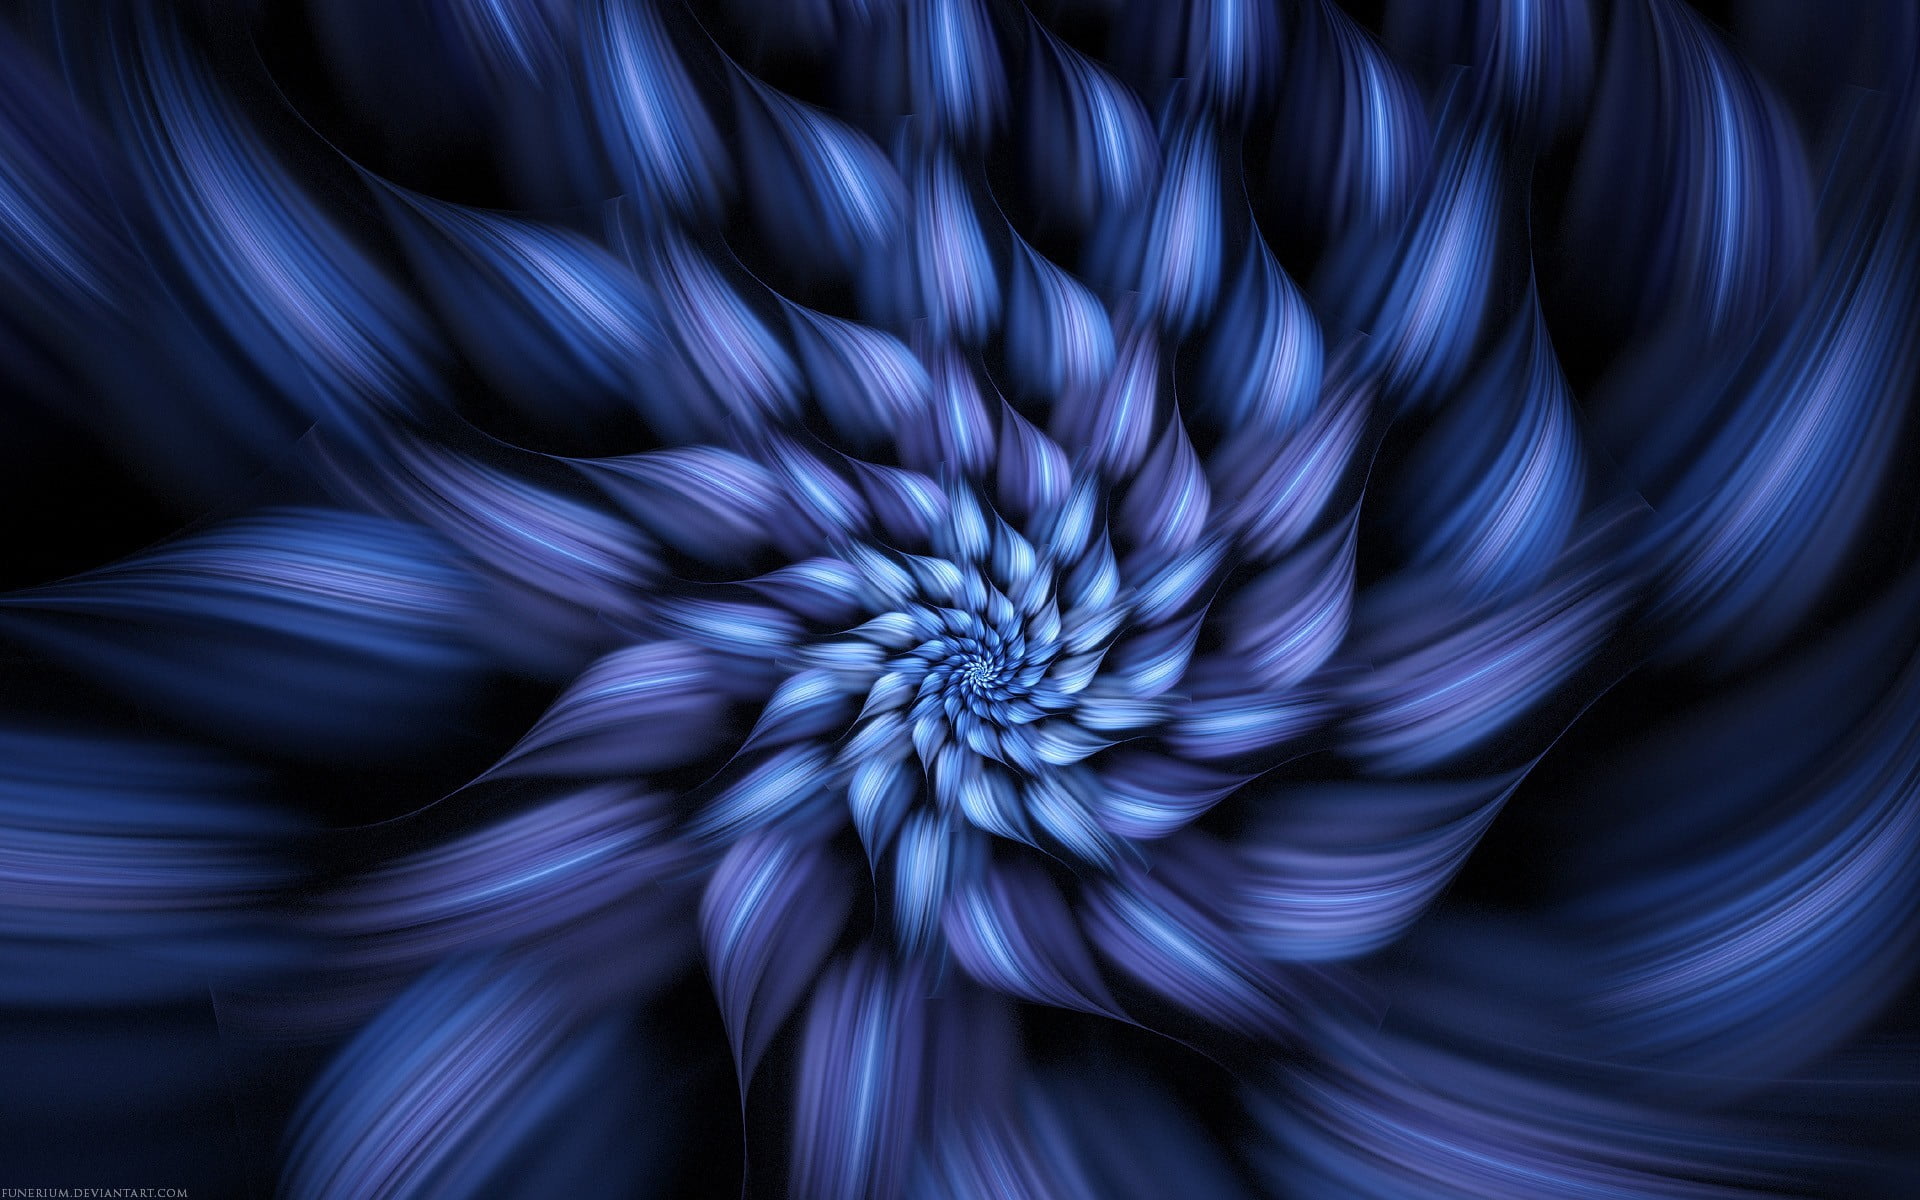 blue flower illustration, abstract, petals, brush strokes, motion